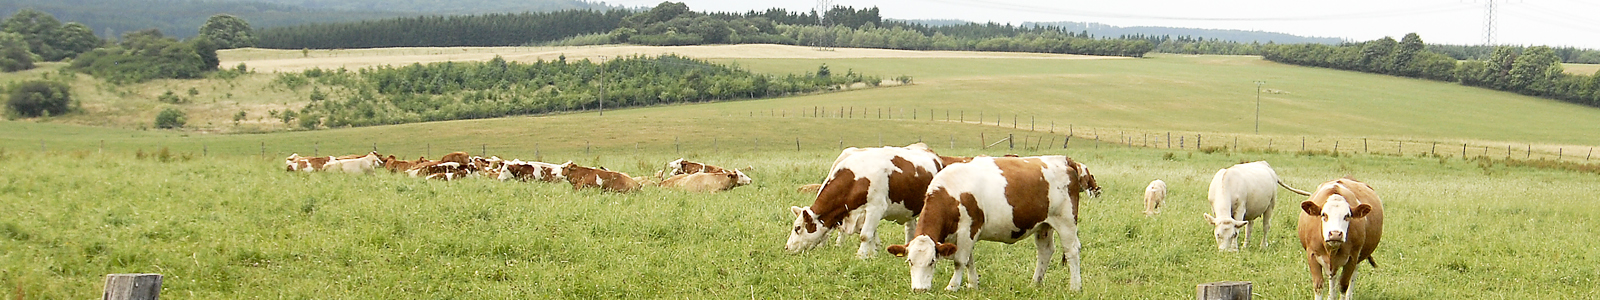 Rinder in einer Weidenlandschaft ©Feuerbach